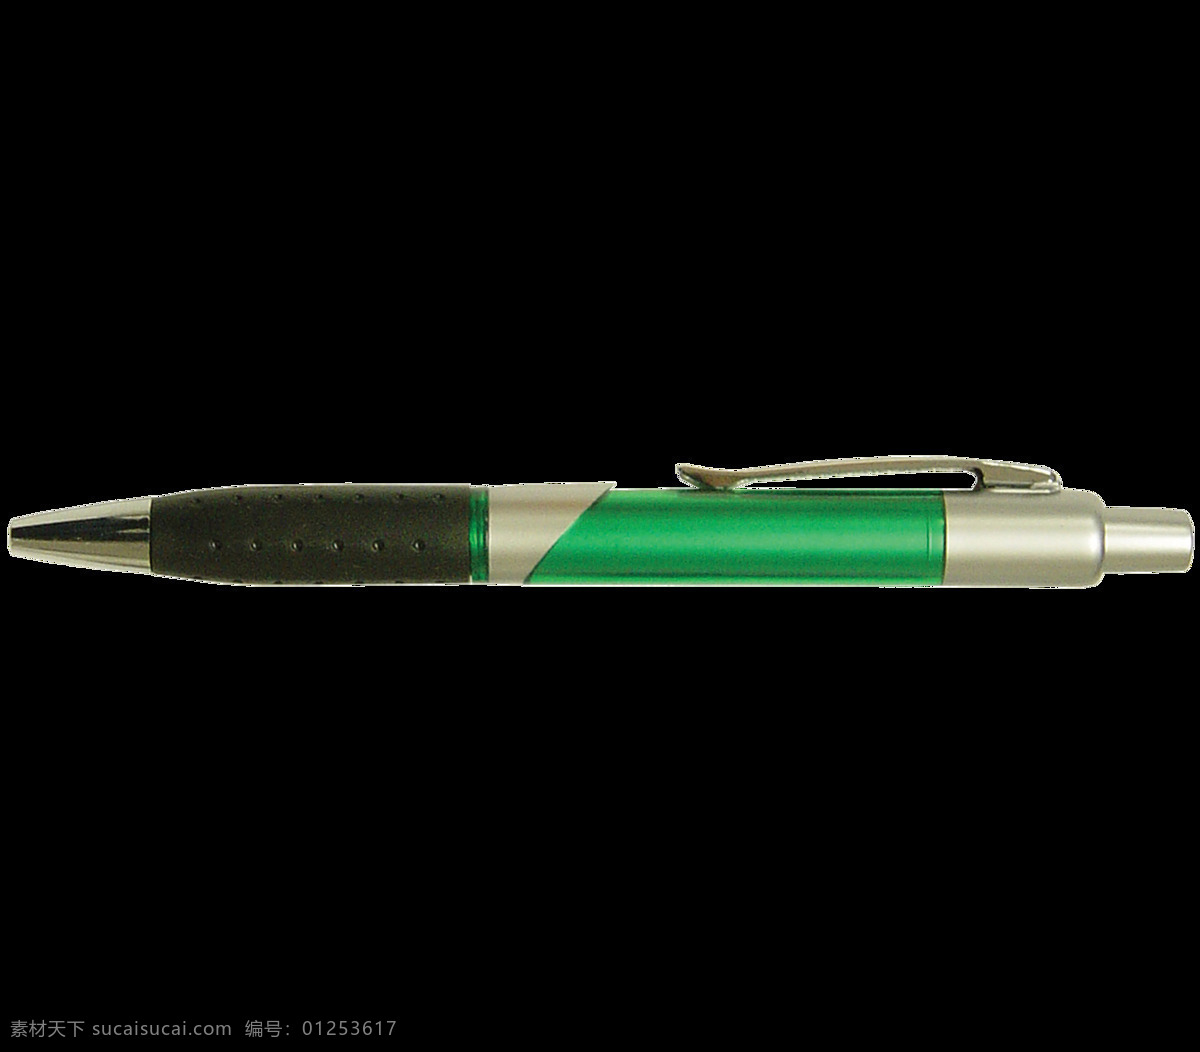 绿色 笔筒 钢笔 免 抠 透明 图 层 绿色笔筒钢笔 卡通钢笔 一支钢笔 简 笔画 大全 钢笔头 简笔画钢笔 钢笔漫画 钢笔照片 钢笔尖 英雄钢笔 派克钢笔 书法钢笔